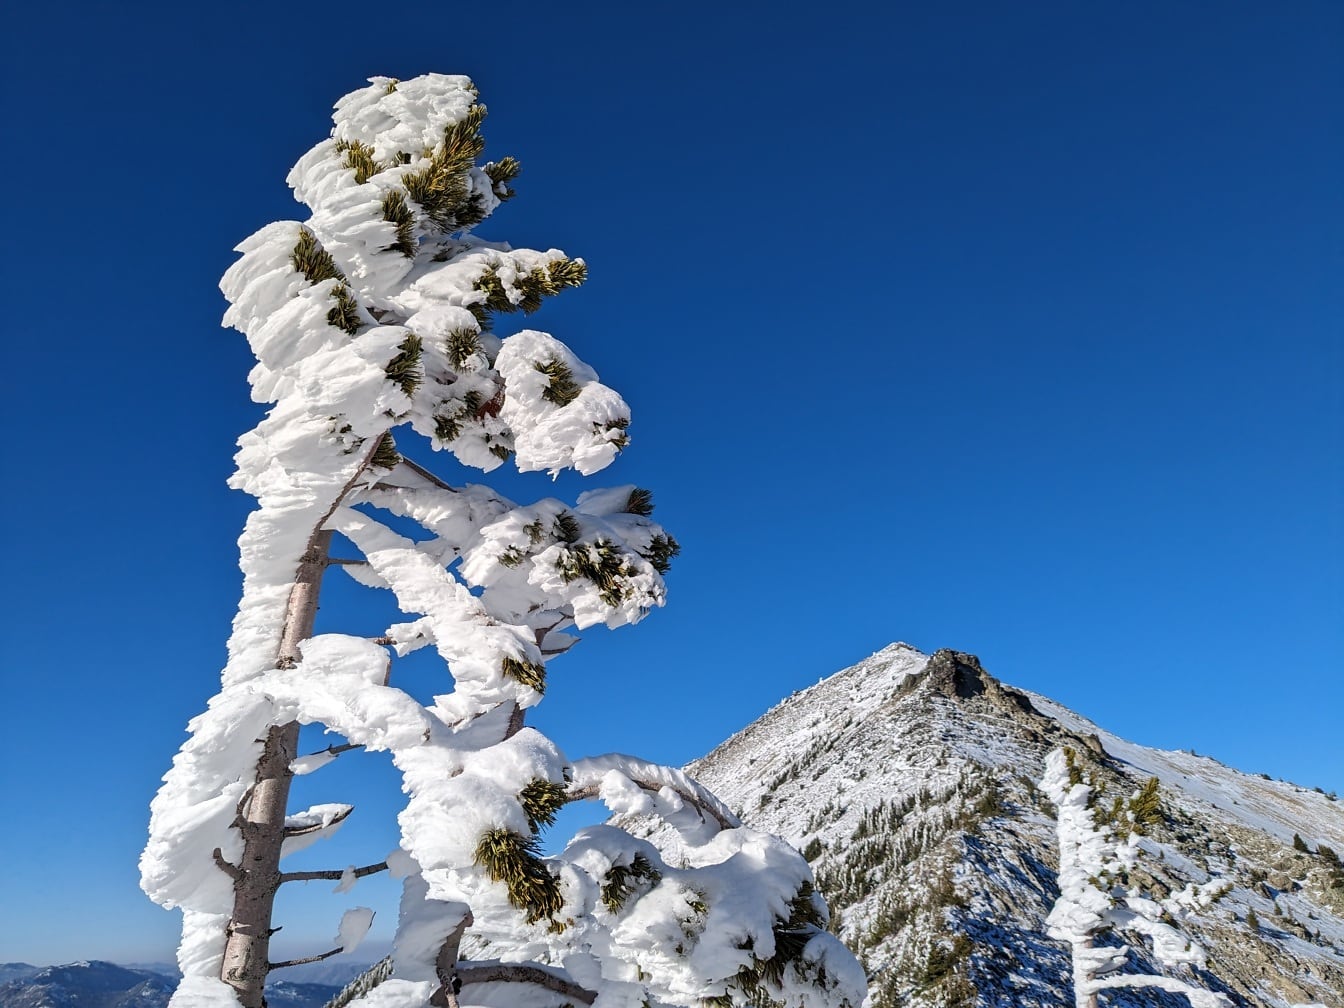 Cành cây lá kim với tuyết đóng băng với bầu trời xanh đậm làm nền